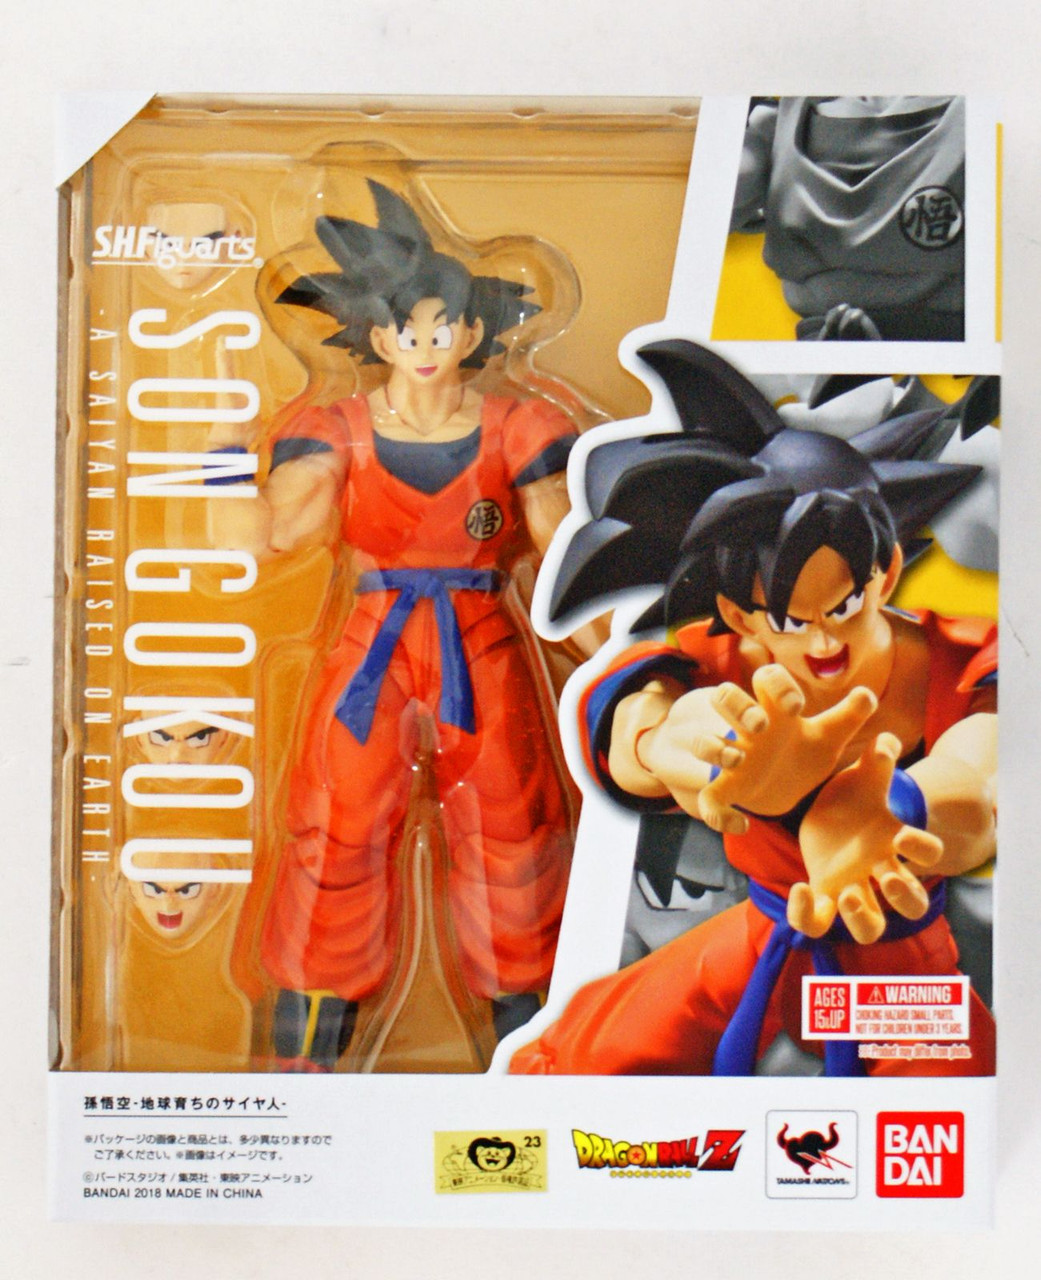 S.H. Figuarts Son Goku -A Saiyan Raised on Earth- Figure (Dragon Ball Z)